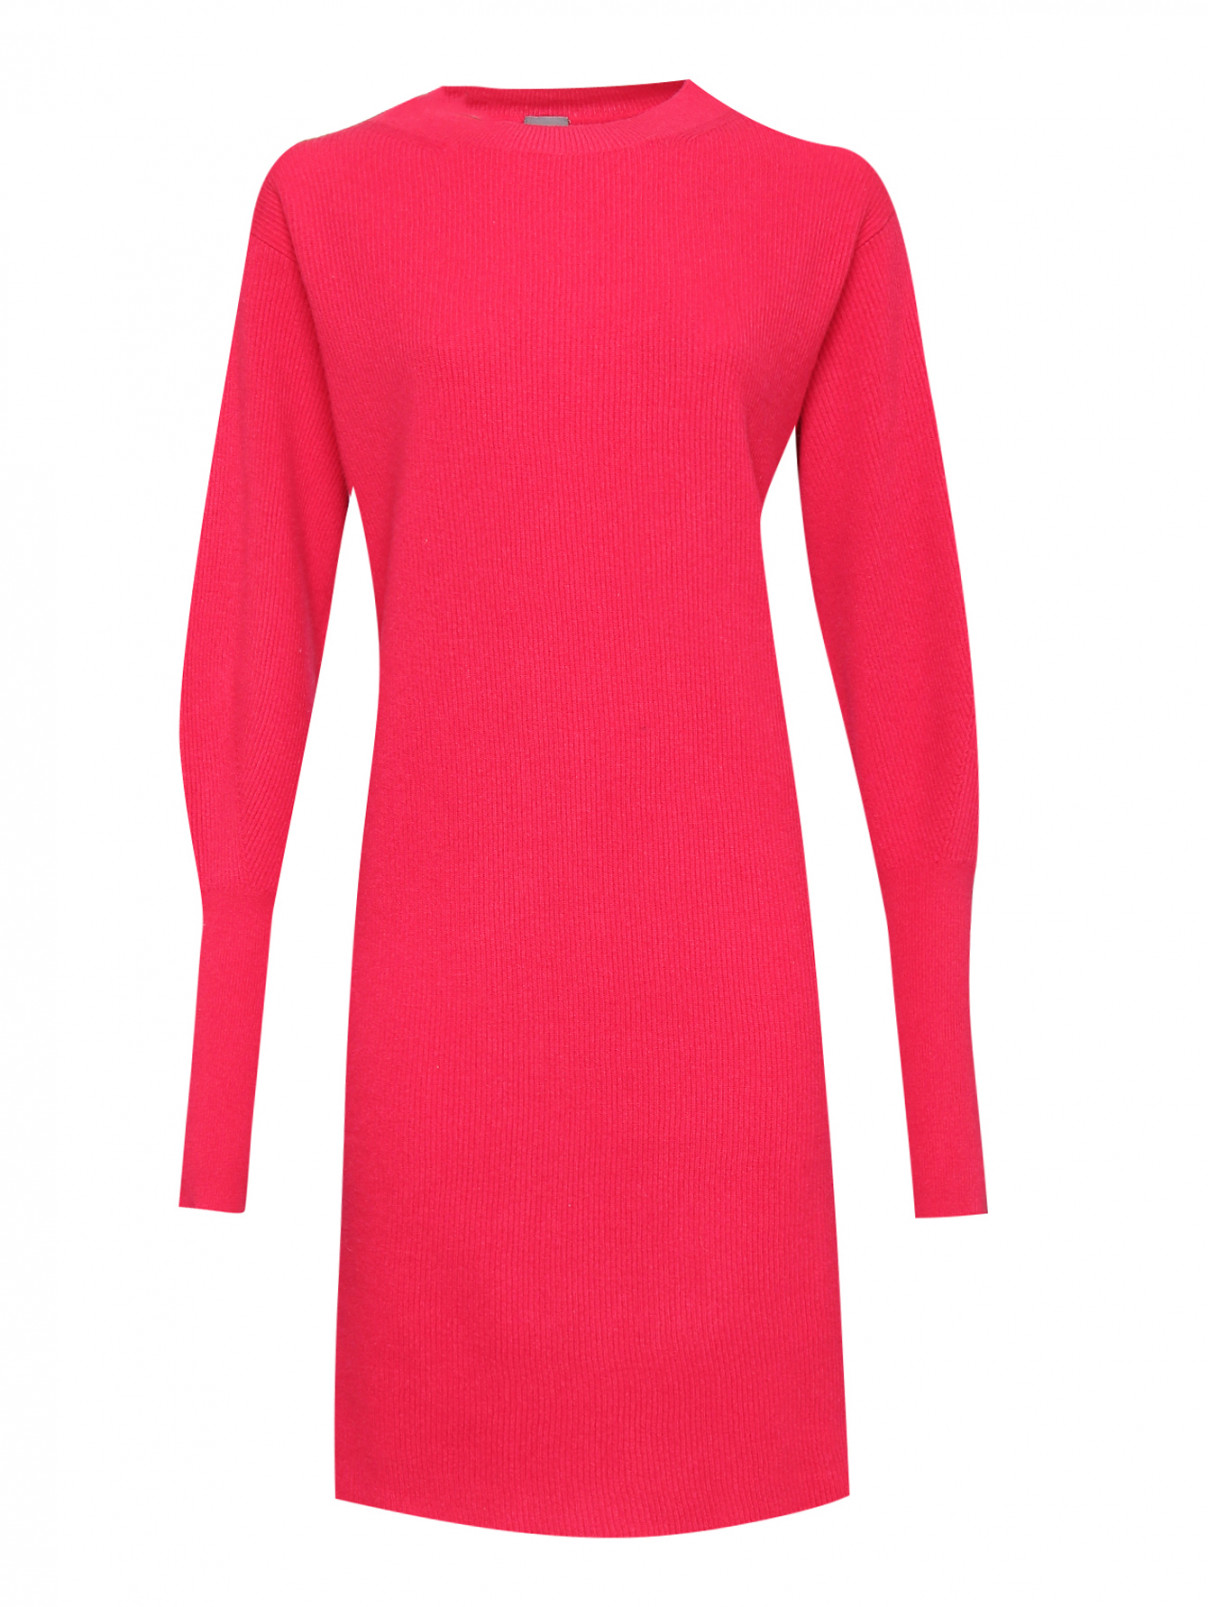 Платье-миди из шерсти и кашемира Lorena Antoniazzi  –  Общий вид  – Цвет:  Красный